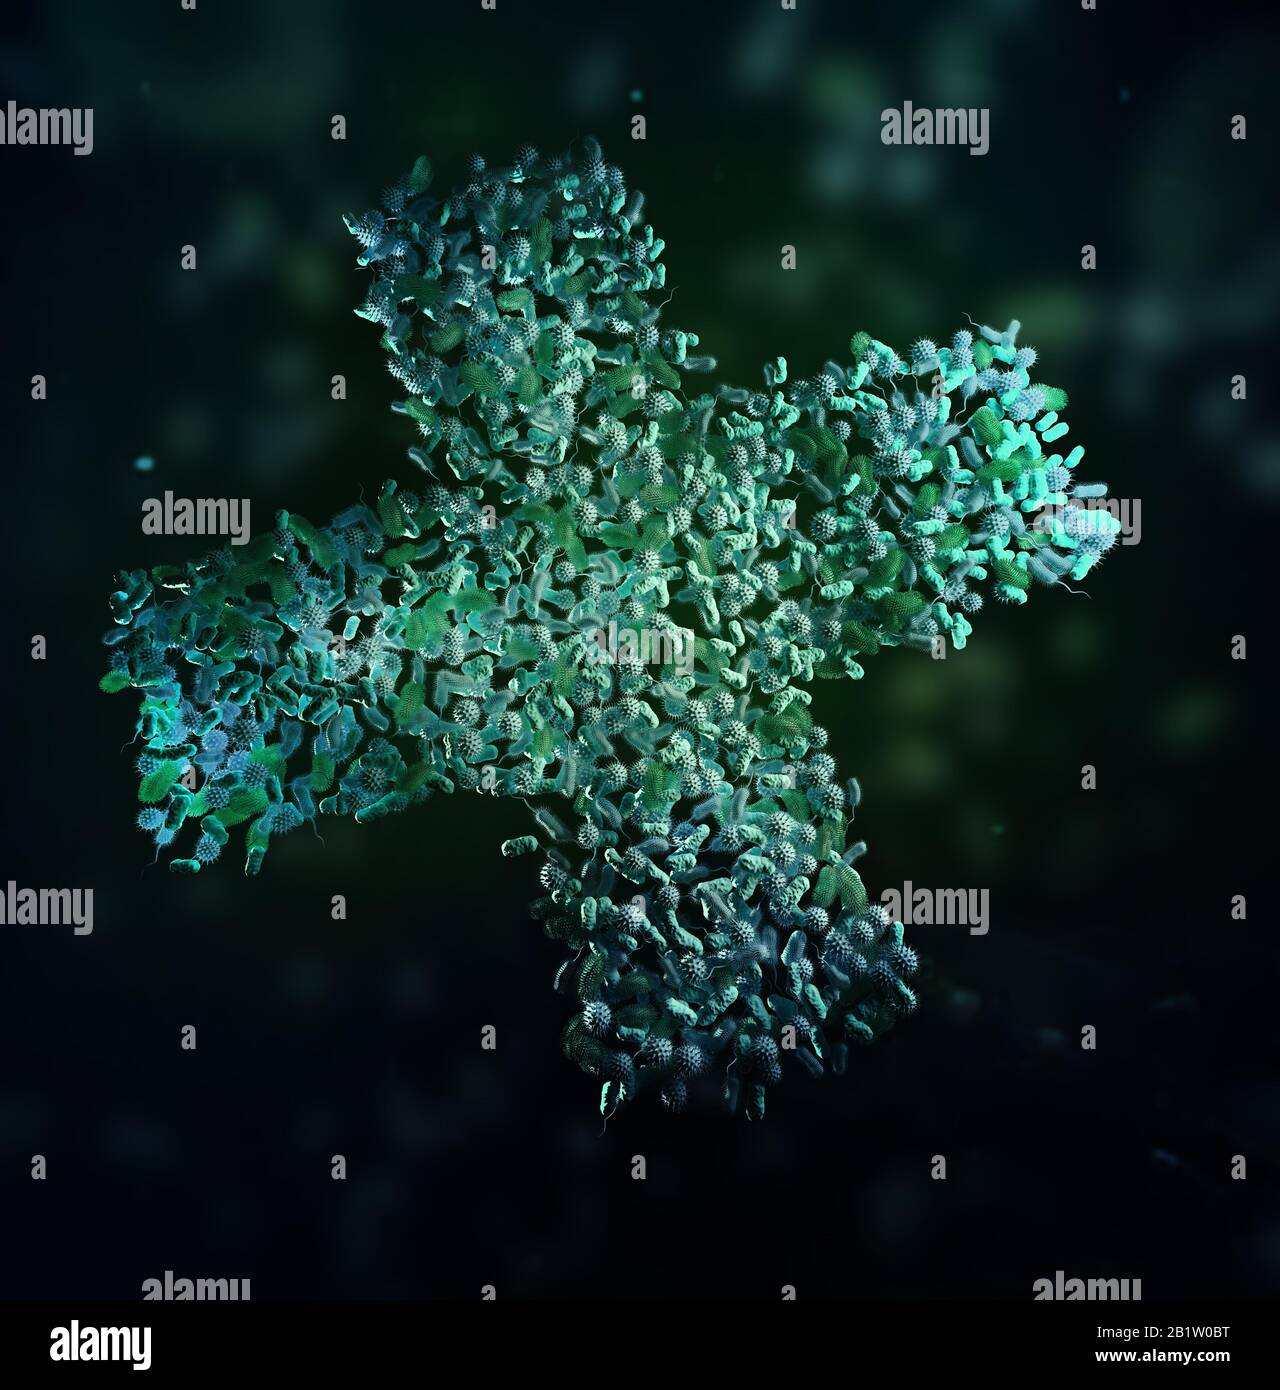 Bakterien, die ein Kreuz bilden - Mikrobiom und Probiotika Konzept 3D-Abbildung. Stockfoto